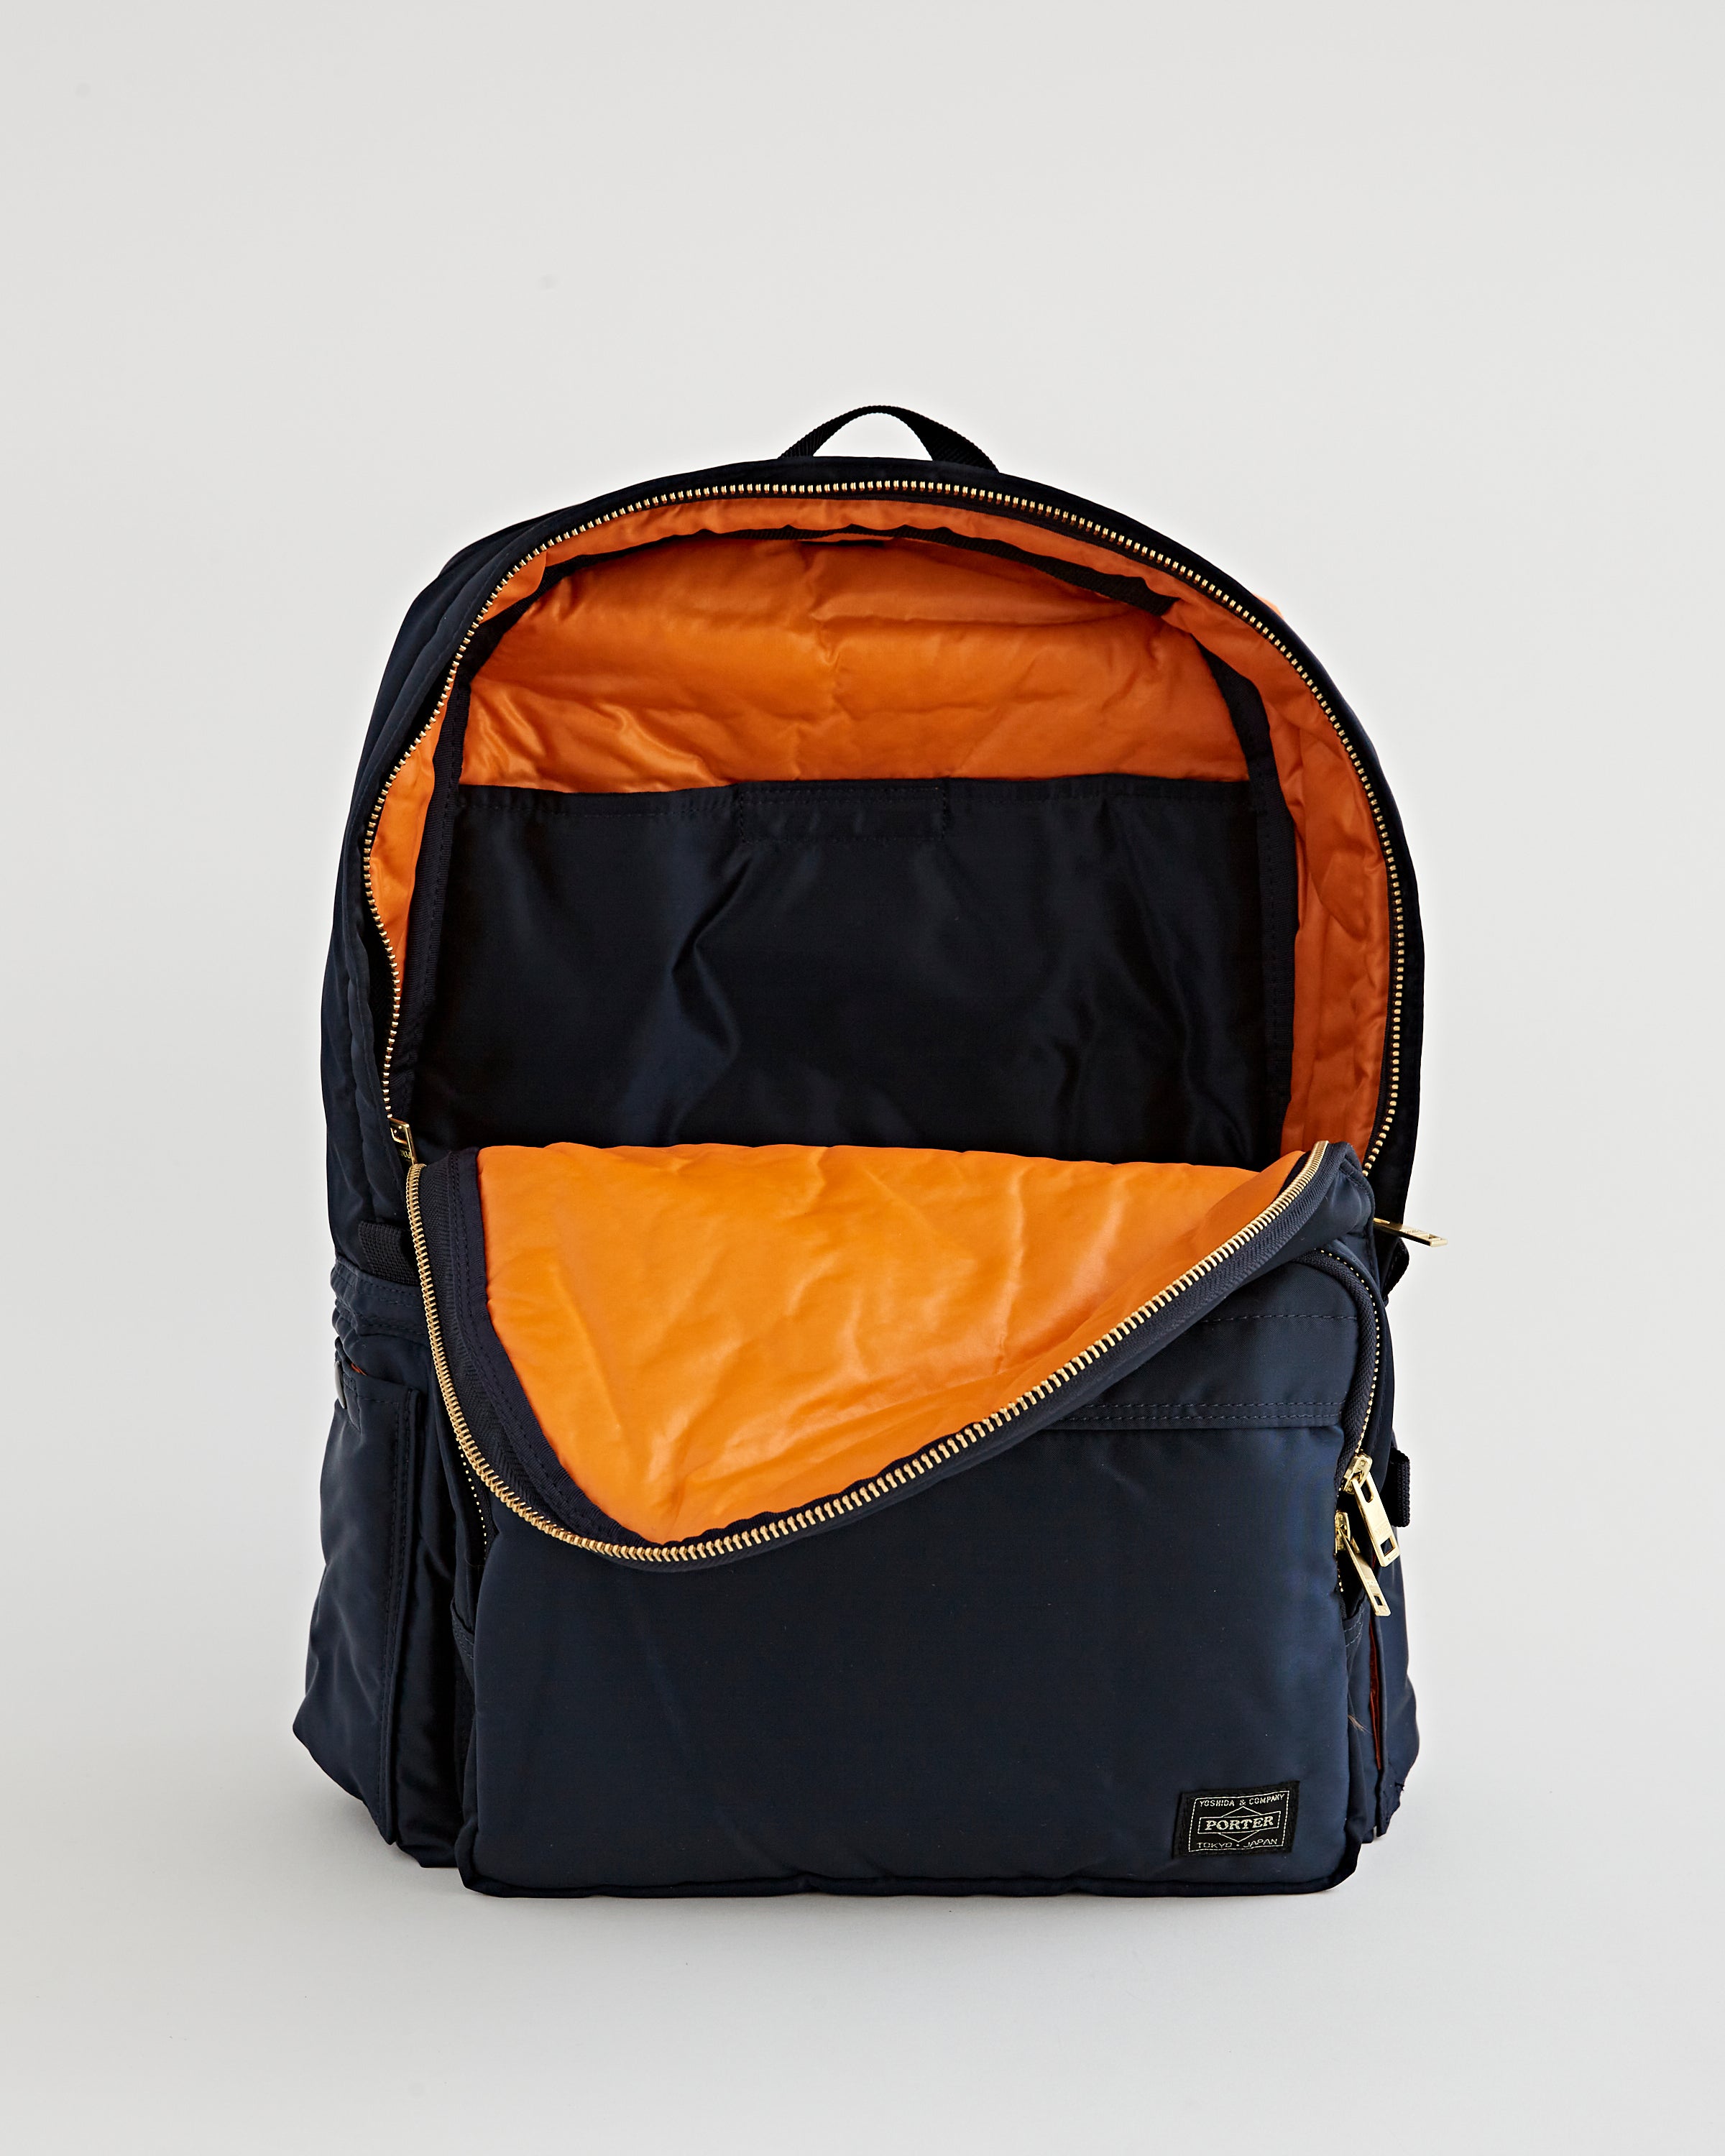 PORTER-YOSHIDA & CO Tanker Nylon-Twill Backpack for Men